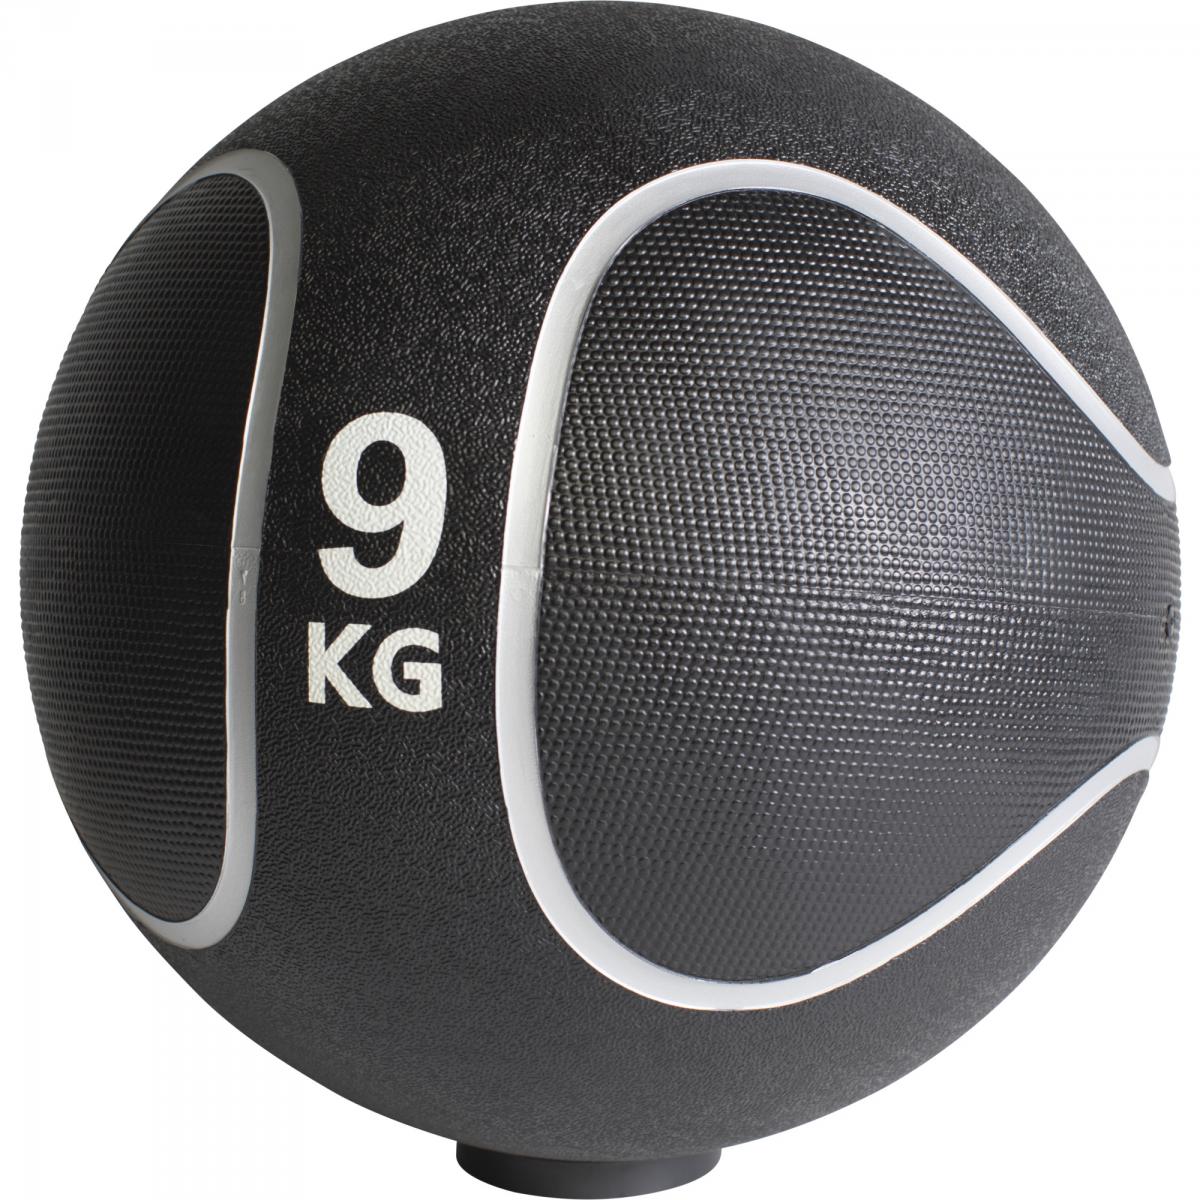 Médecine ball style noir/gris de 9 KG diamètre 28,6cm